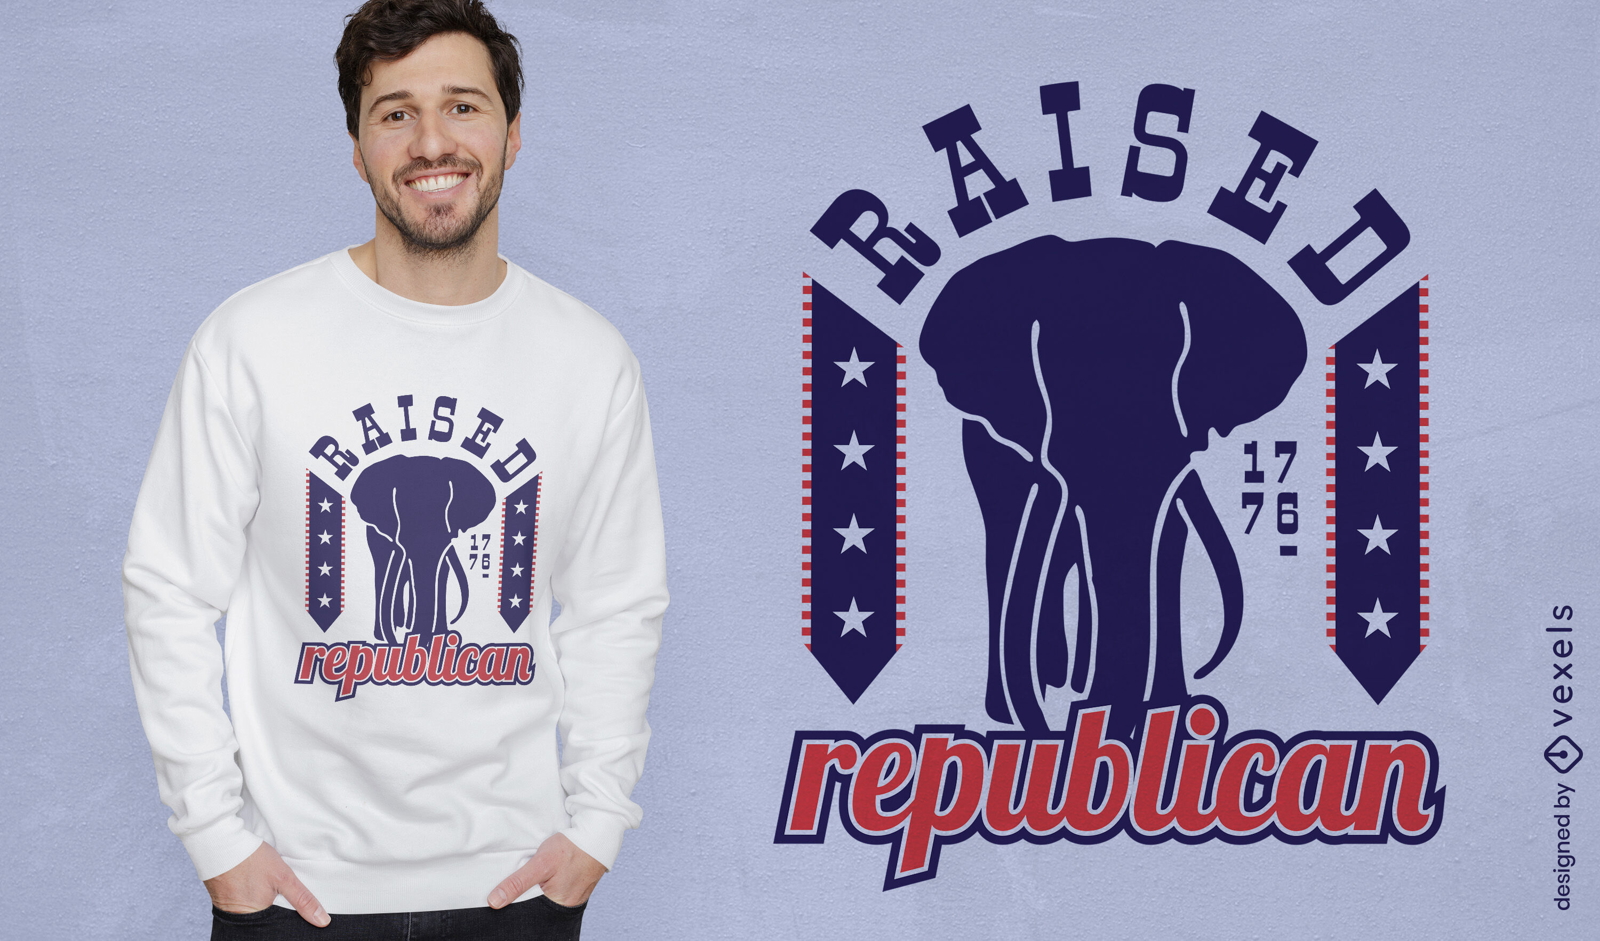 Raised republican t-shirt design